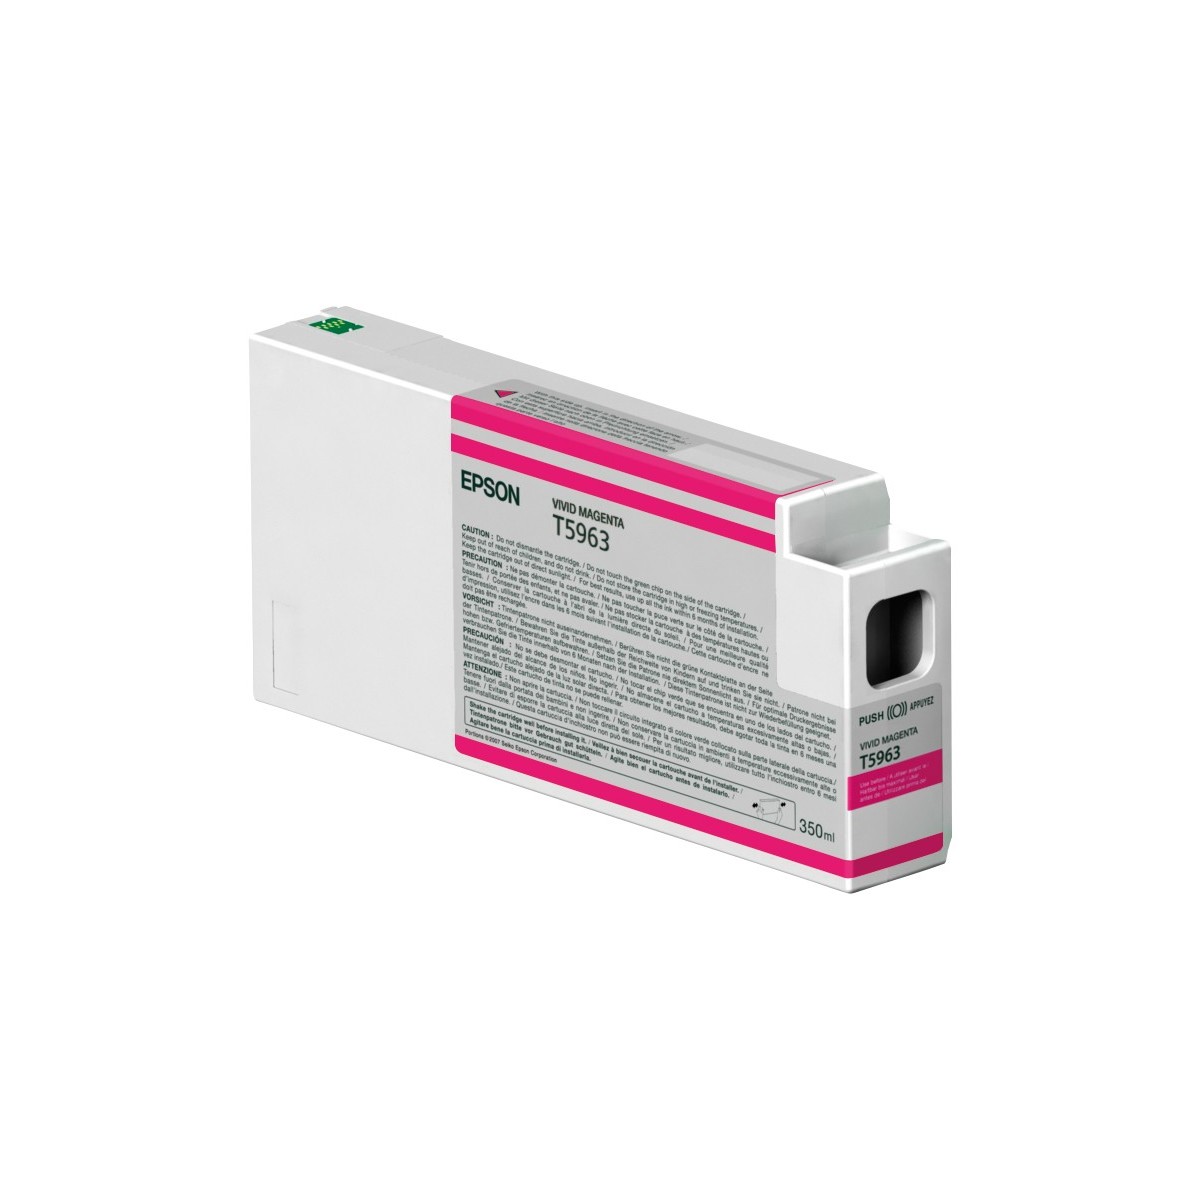 Epson Singlepack Vivid Magenta T596300 UltraChrome HDR 350 ml - Pigment-based ink - 350 ml - 1 pc(s)